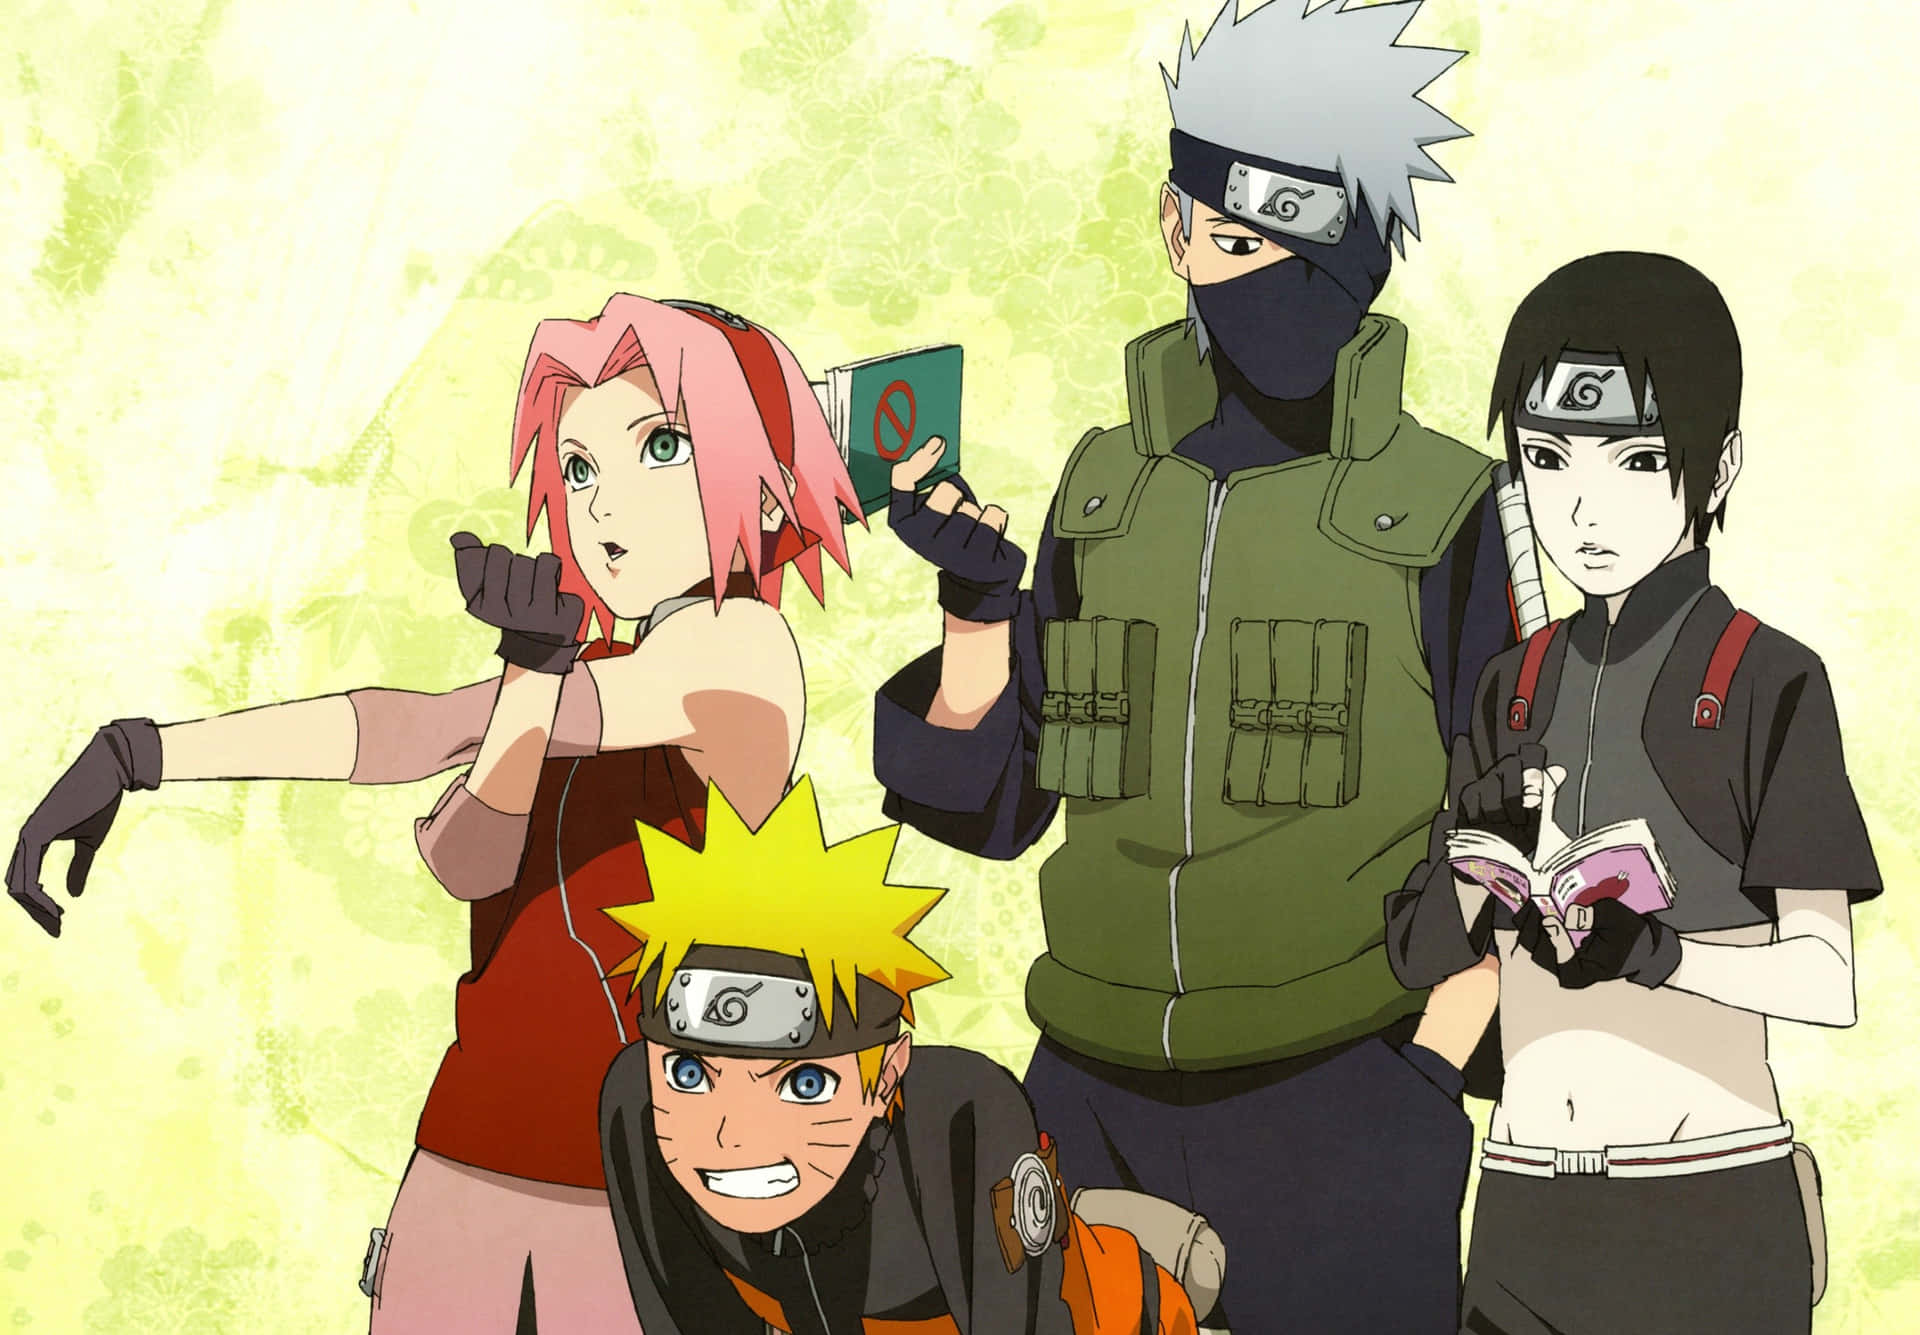 Bliv med i Naruto-gruppen og opdag en verden fyldt med spænding. Wallpaper